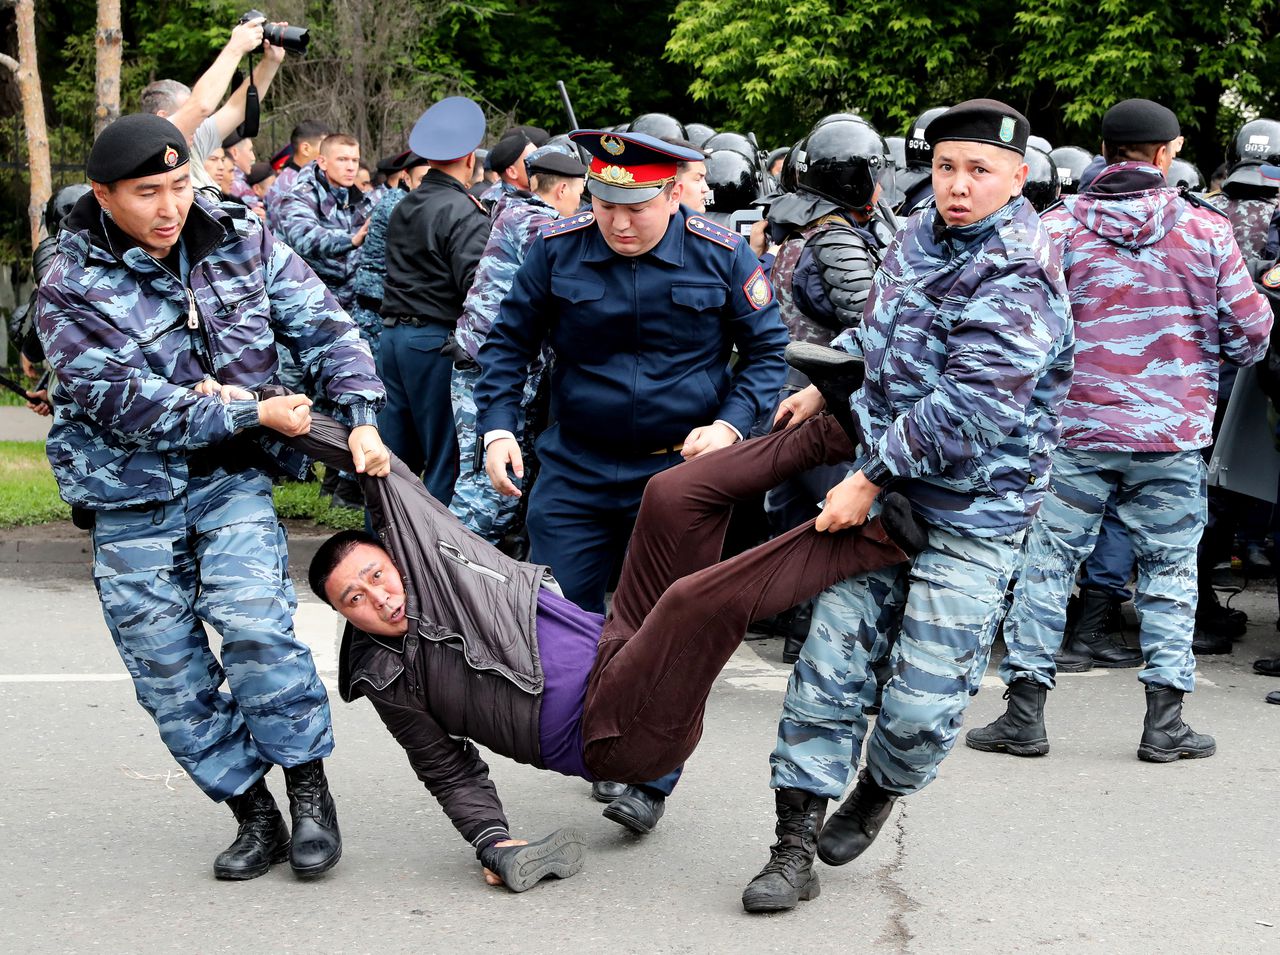 De politie hield ook in de hoofdstad Noer-Soeltan (voorheen Astana) betogers aan.